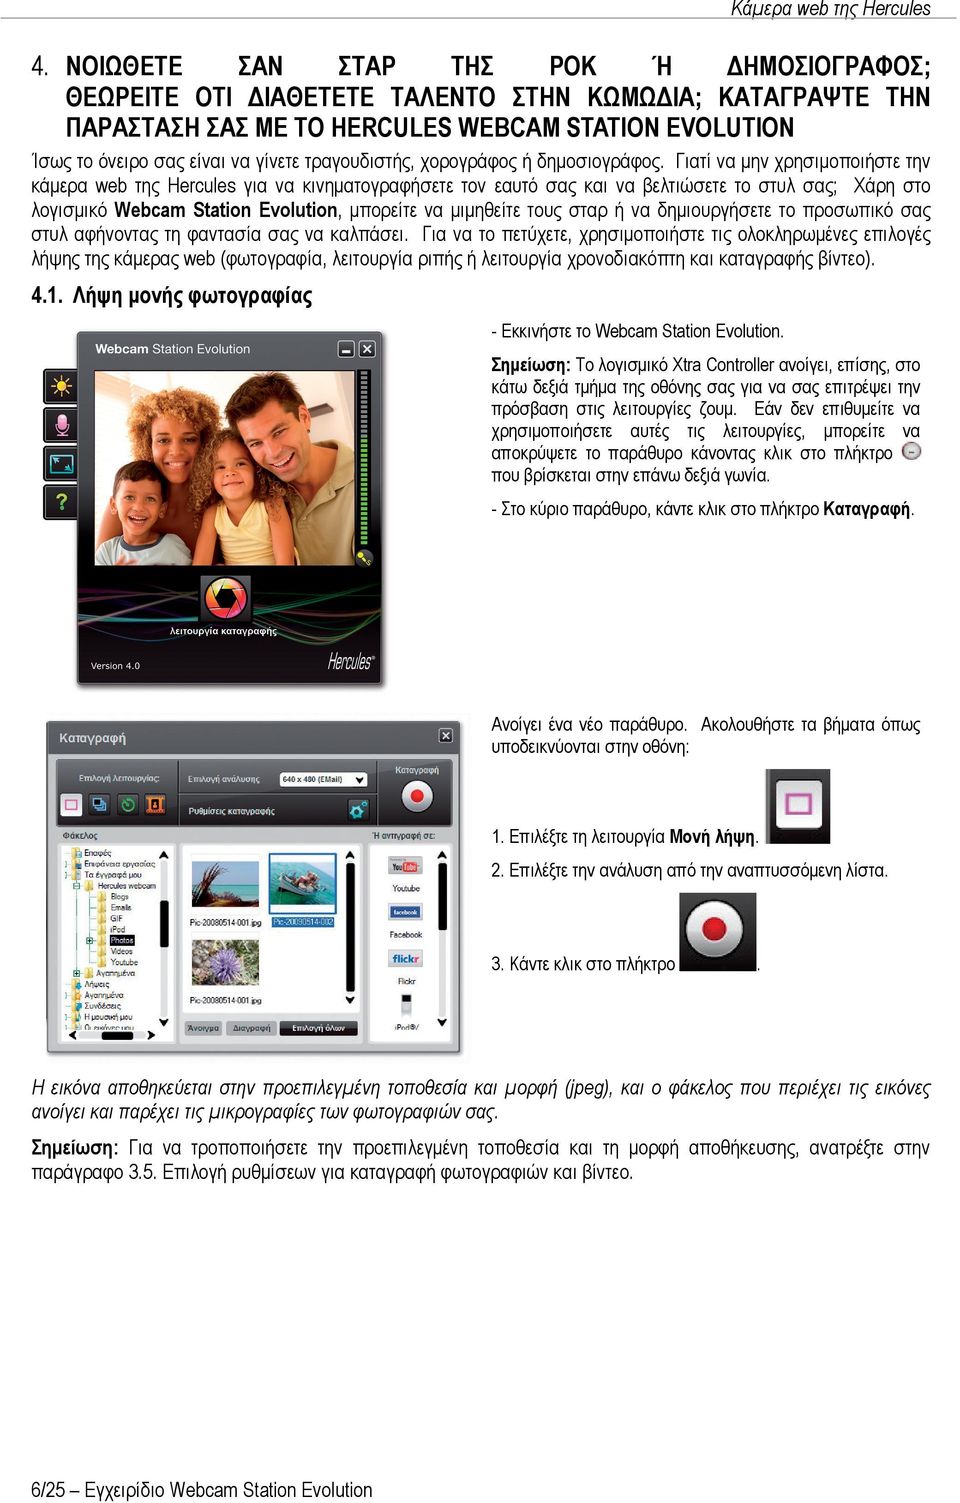 Γιατί να μην χρησιμοποιήστε την κάμερα web της Hercules για να κινηματογραφήσετε τον εαυτό σας και να βελτιώσετε το στυλ σας; Χάρη στο λογισμικό Webcam Station Evolution, μπορείτε να μιμηθείτε τους